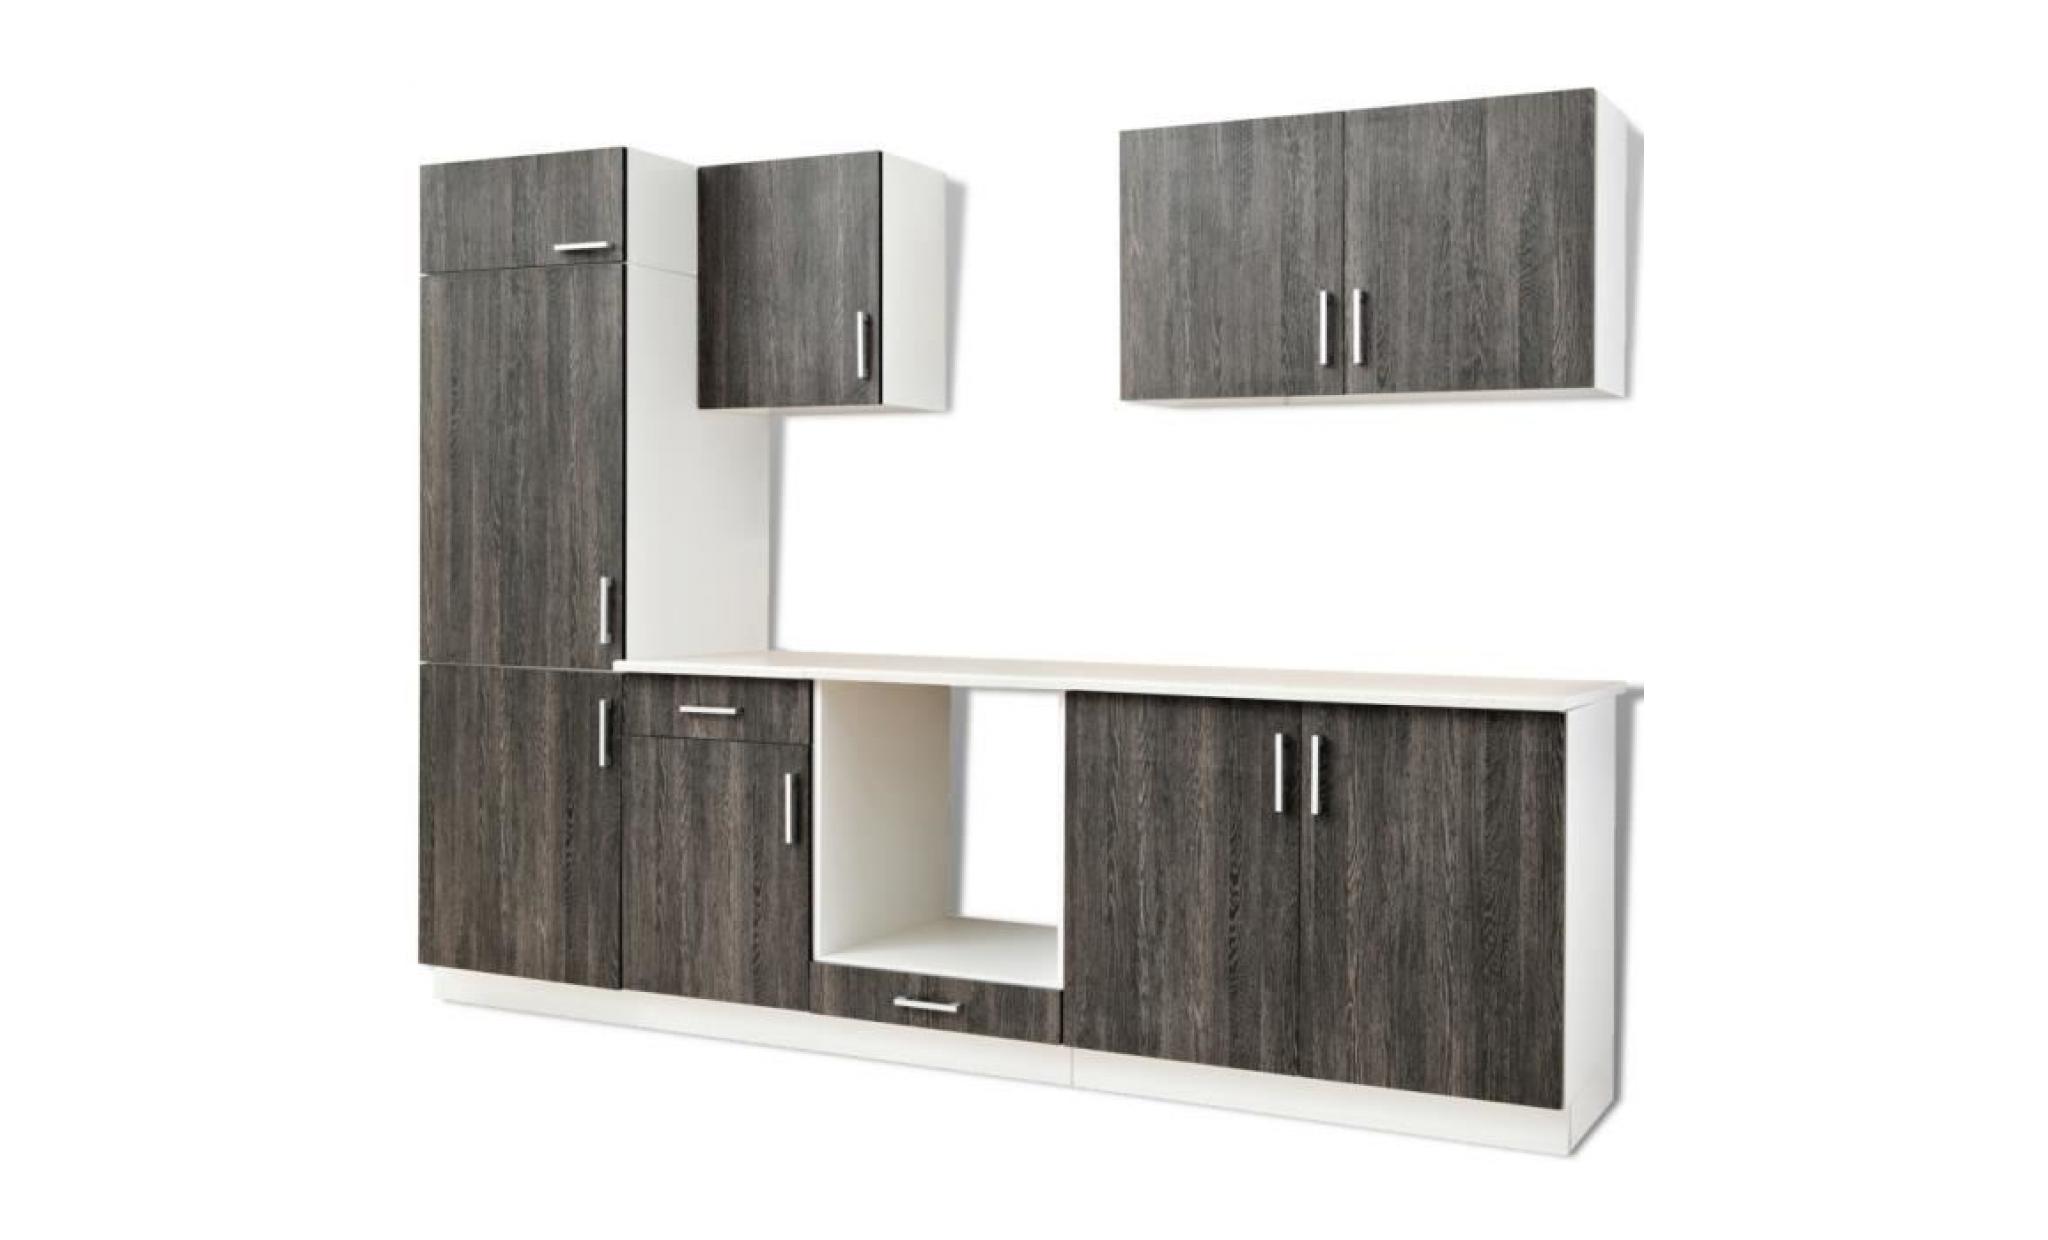 cet ensemble complet de meubles de cuisine sera un excellent ajout à votre cuisine, en optimisant l'espace sans en compromettre l...